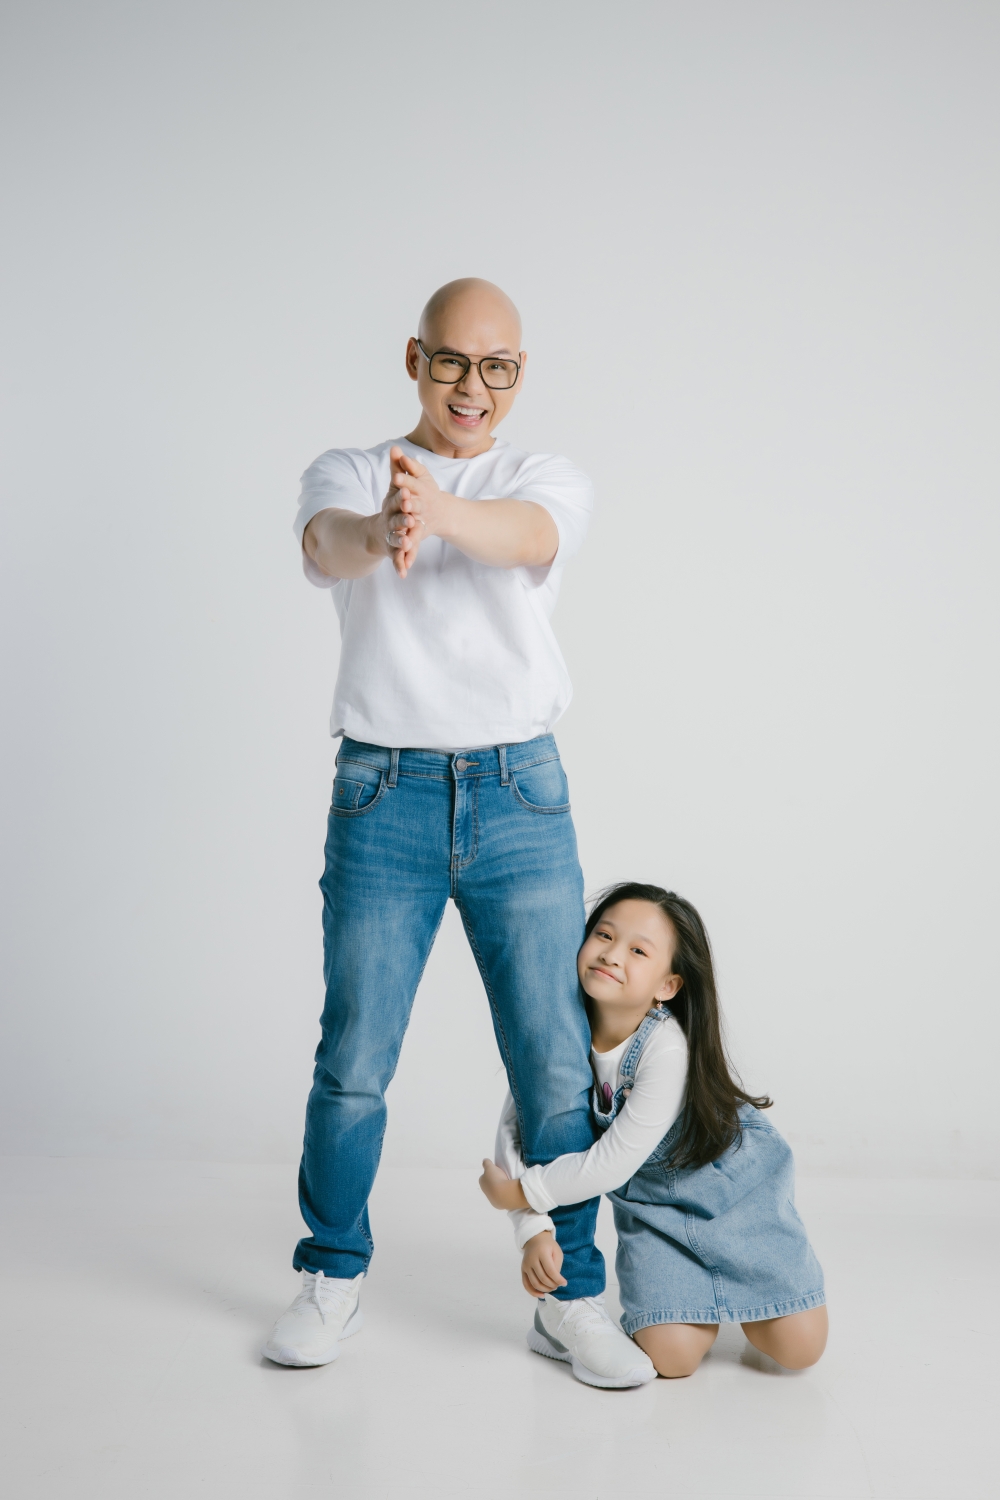 Phan Đinh Tùng cùng con gái hòa giọng trong bài hát cổ động, xua tan mảng màu u ám dịch bệnh - Ảnh 3.